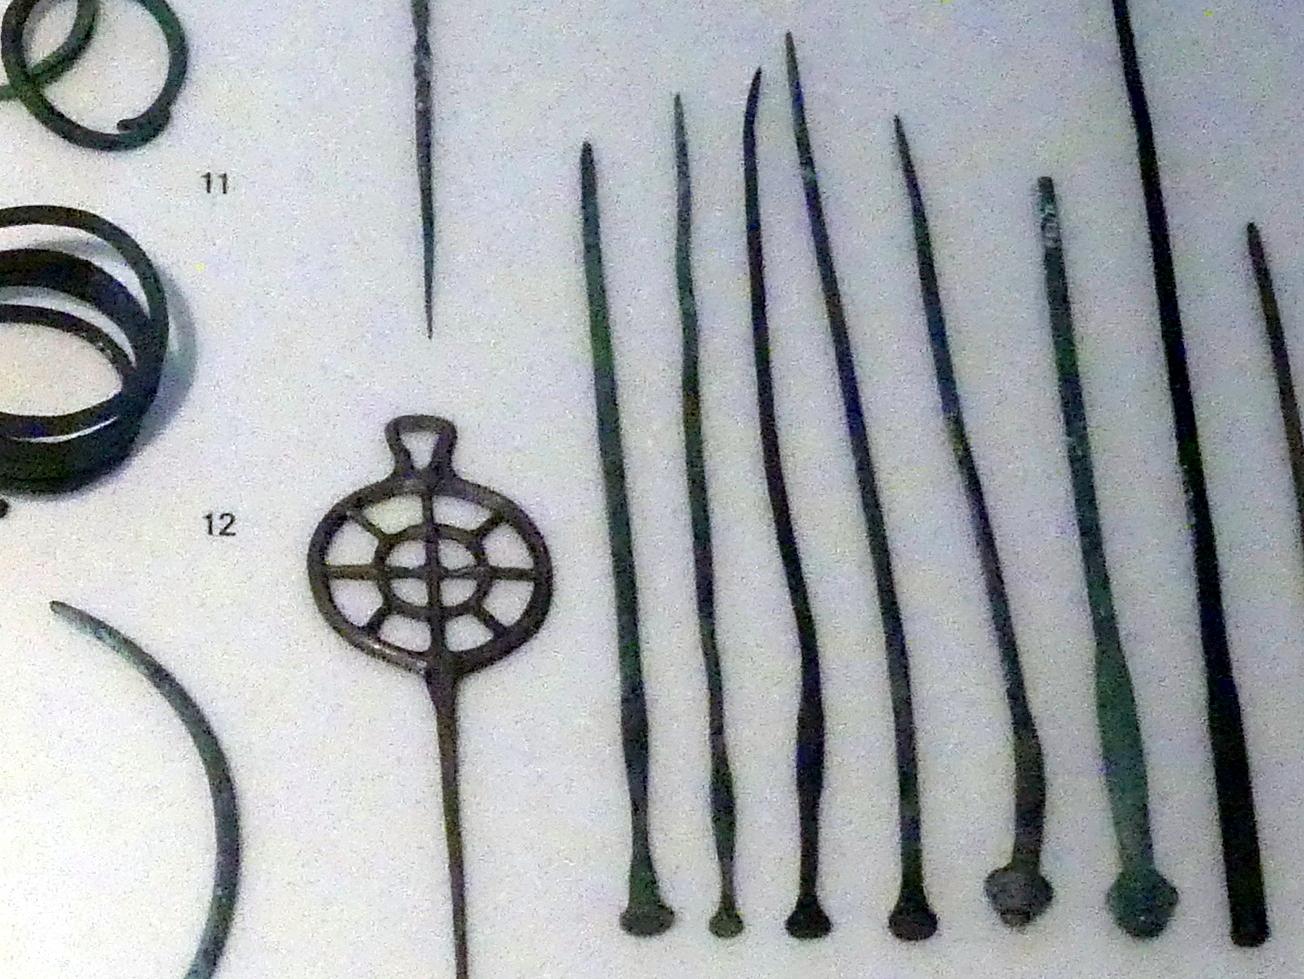 Nadeln, gerieft, mit verdicktem Hals, Bronzezeit, 3365 - 700 v. Chr., 1500 - 1400 v. Chr.